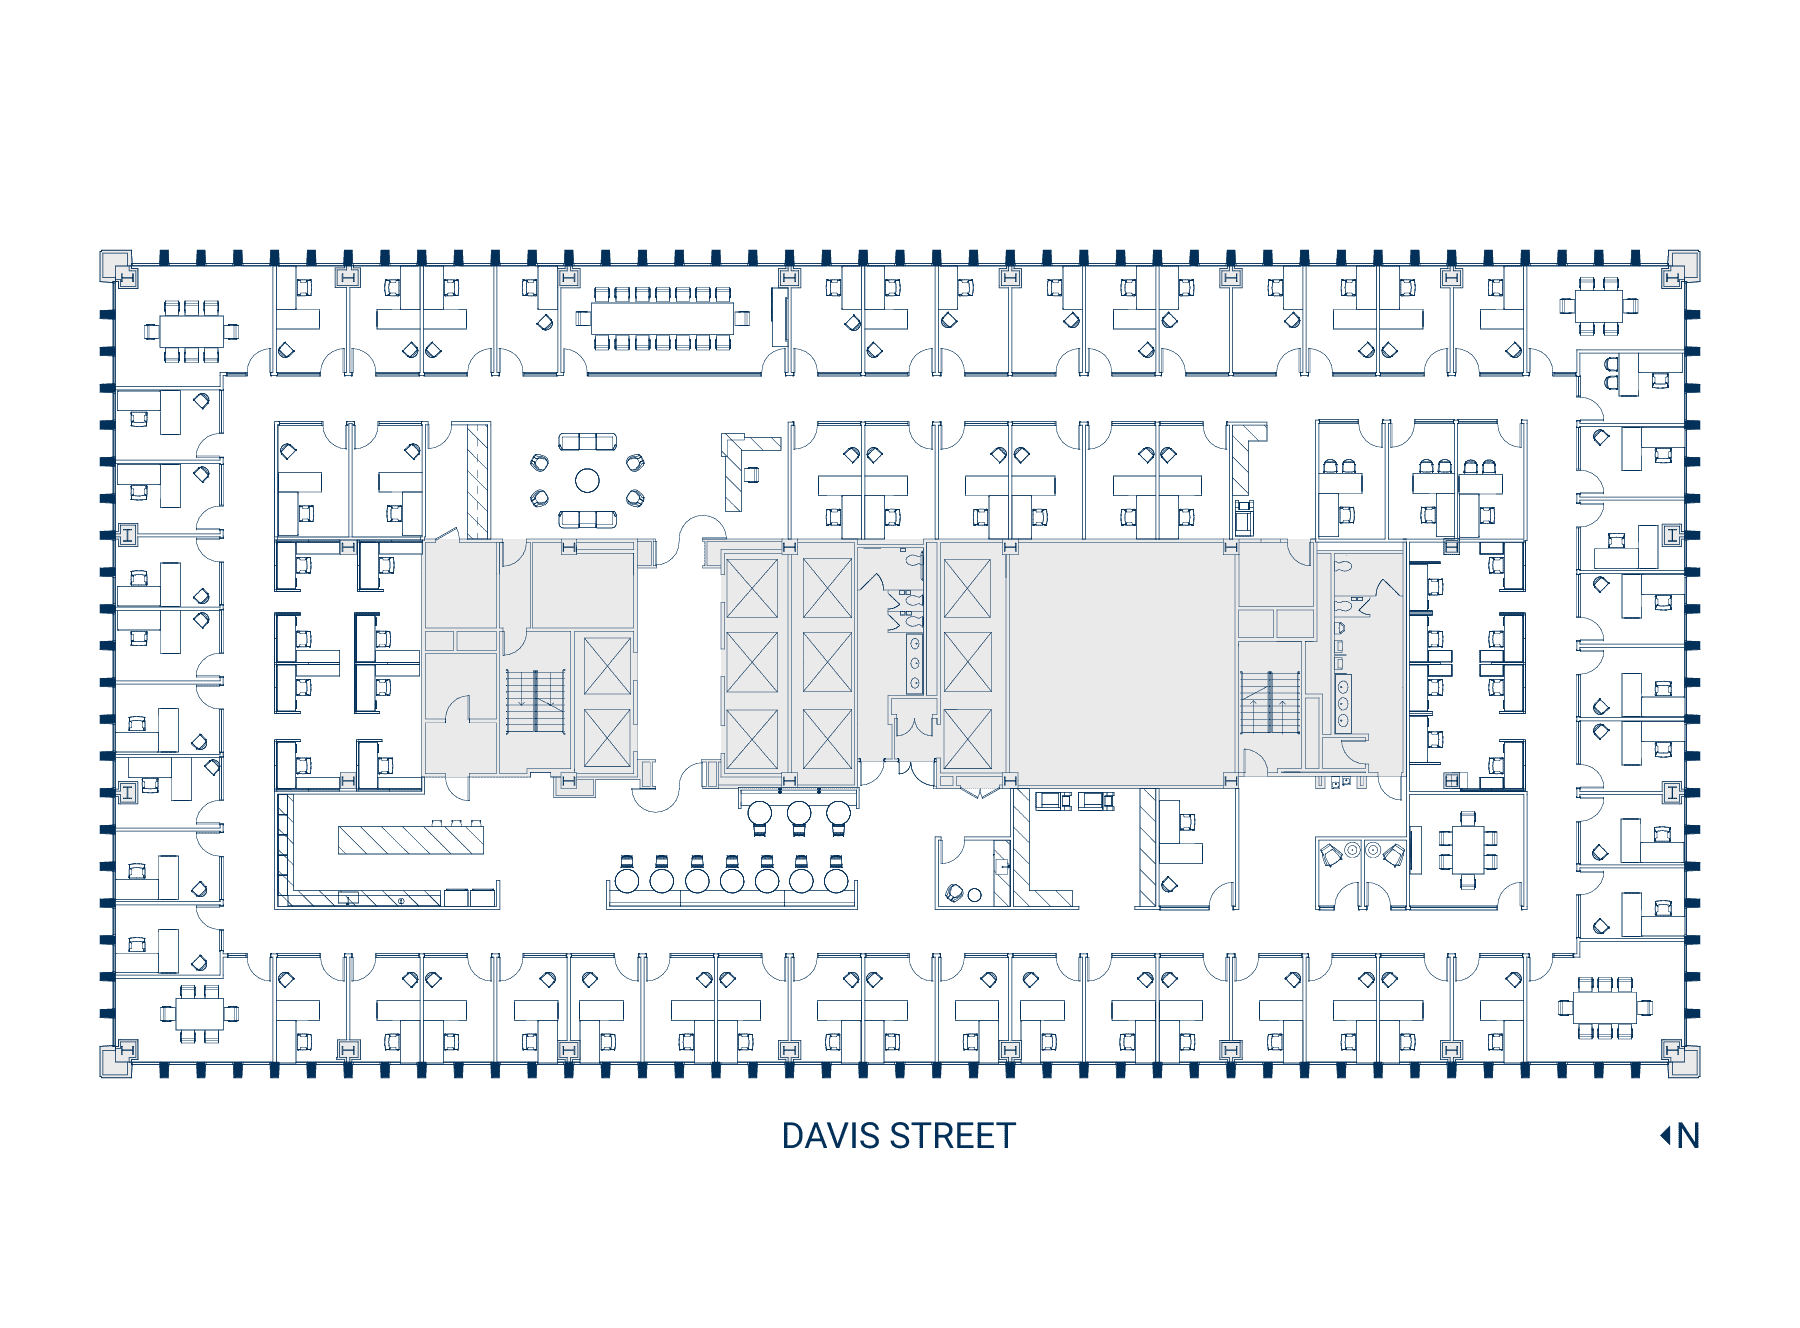 Floor 15 Suite 1500 Floor Plan - Hypothetical Private Office (Web)